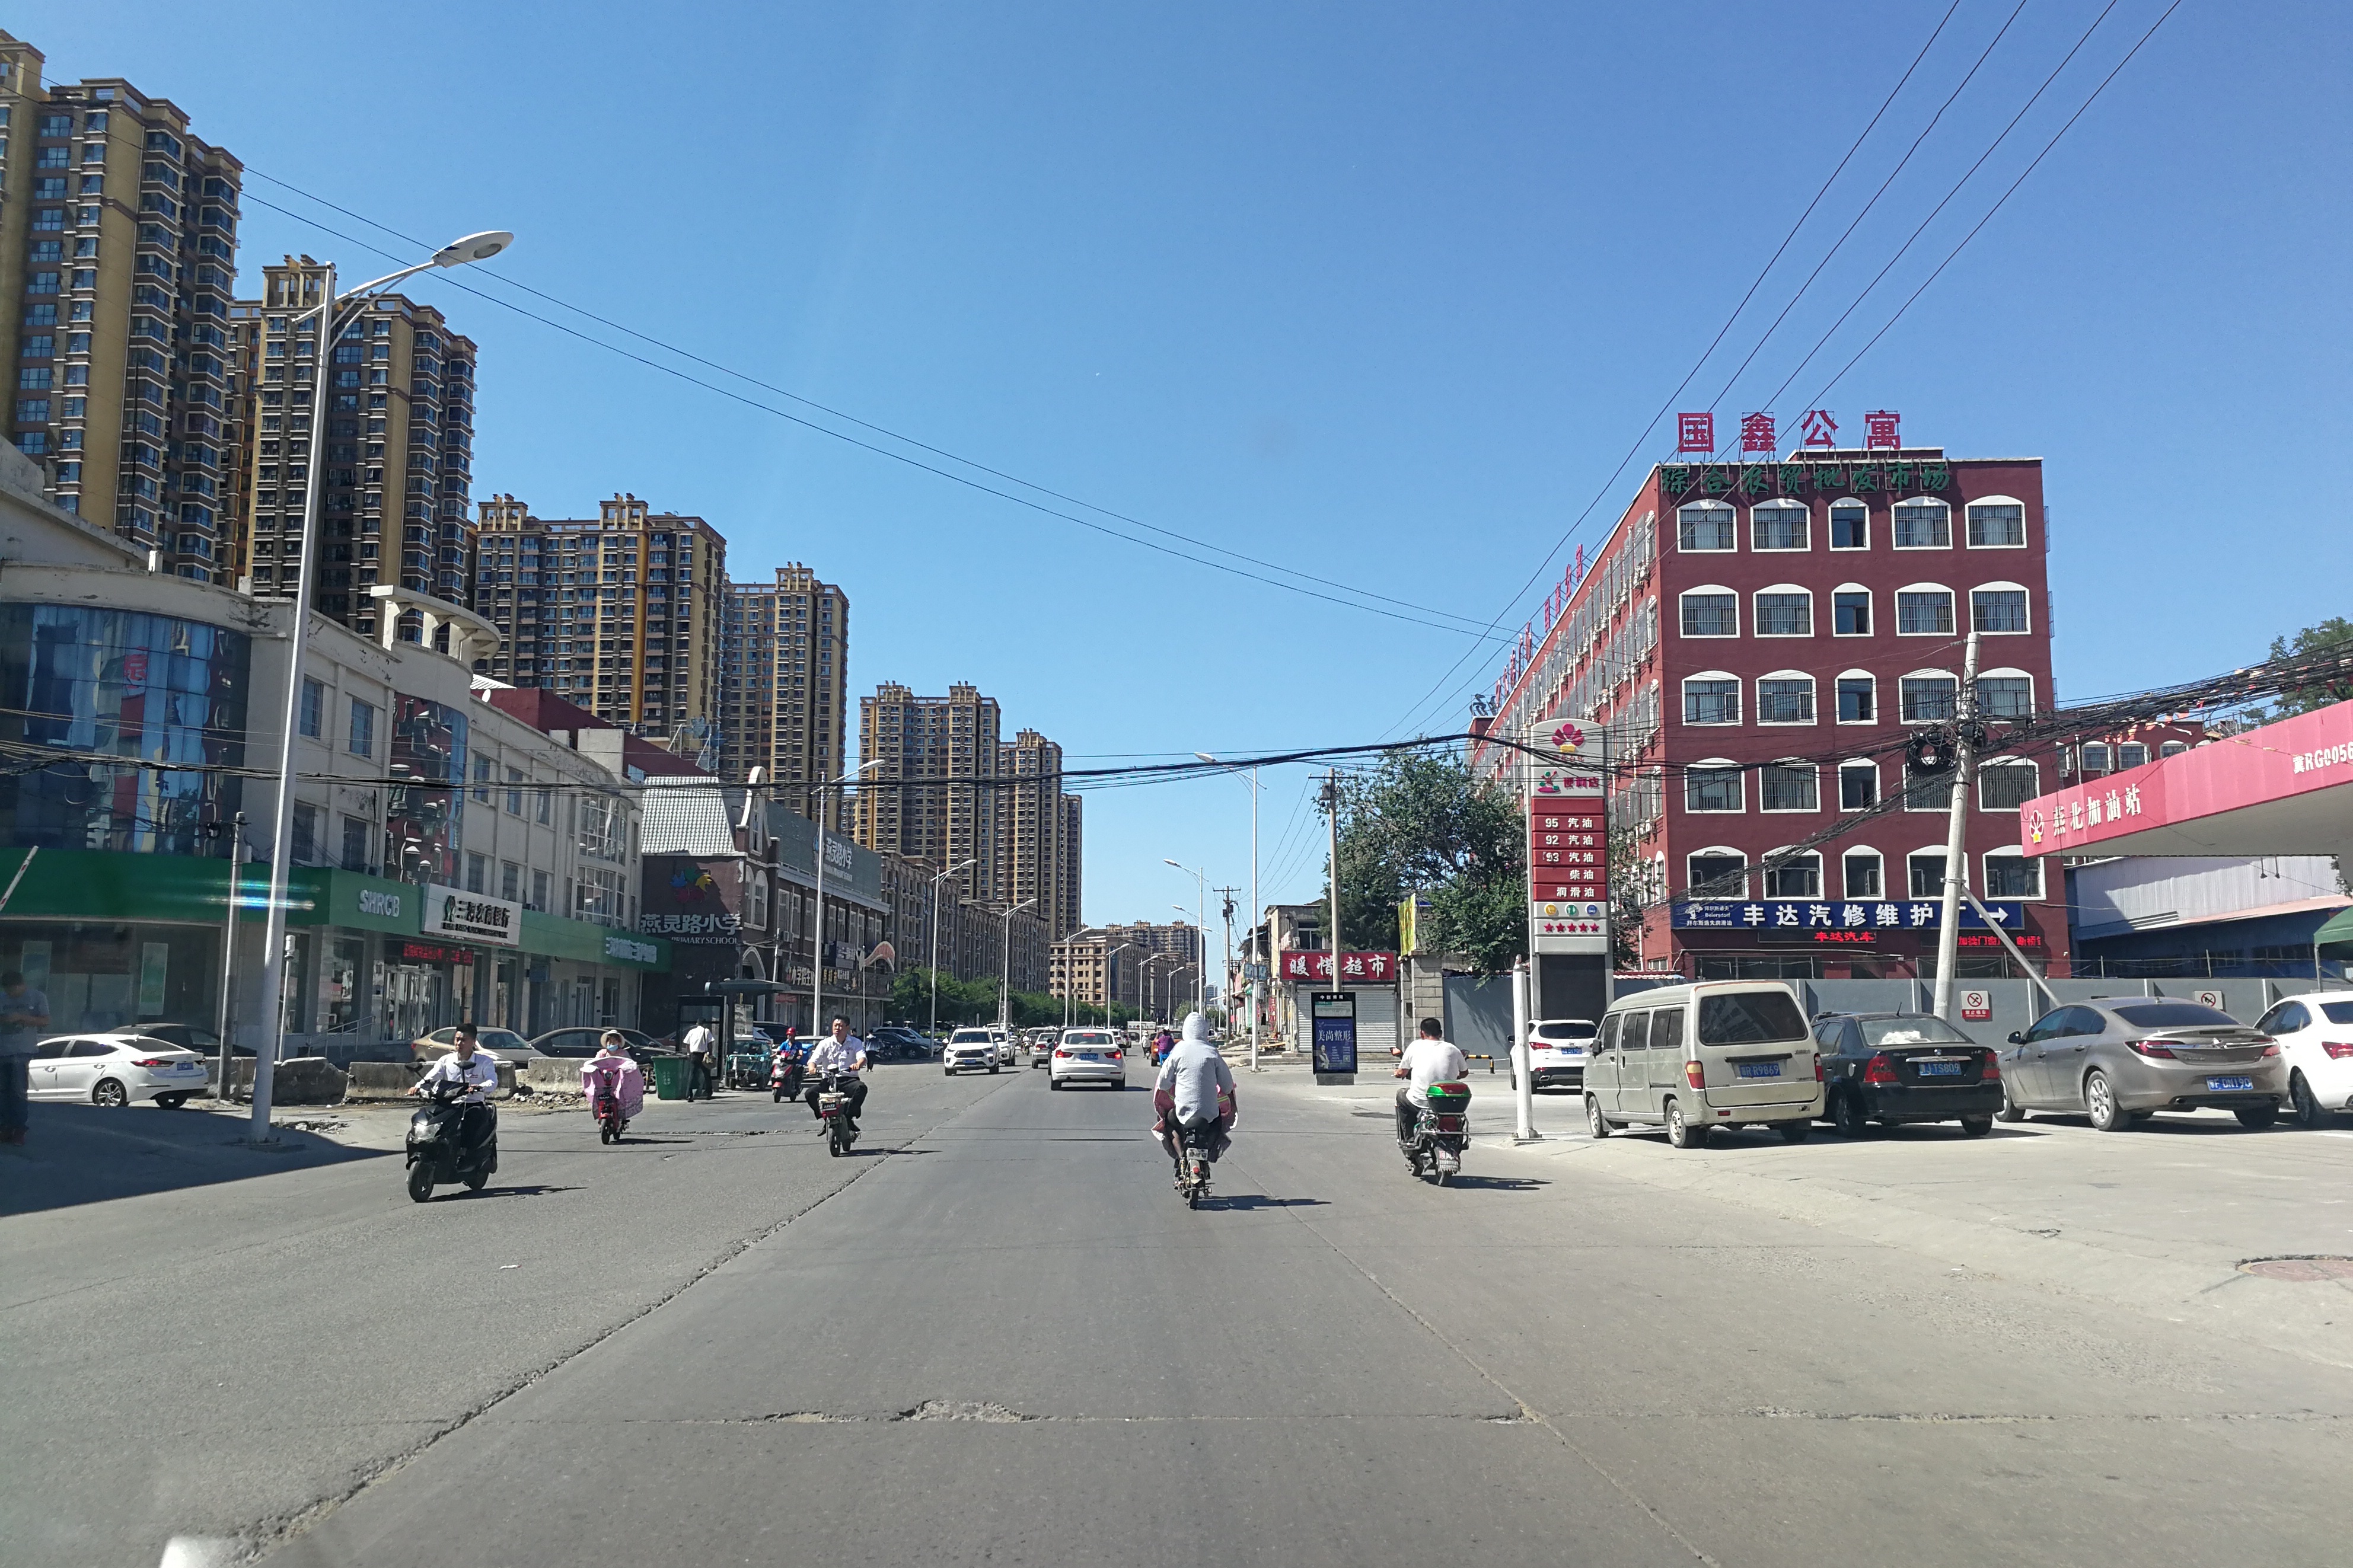 燕郊街景图片